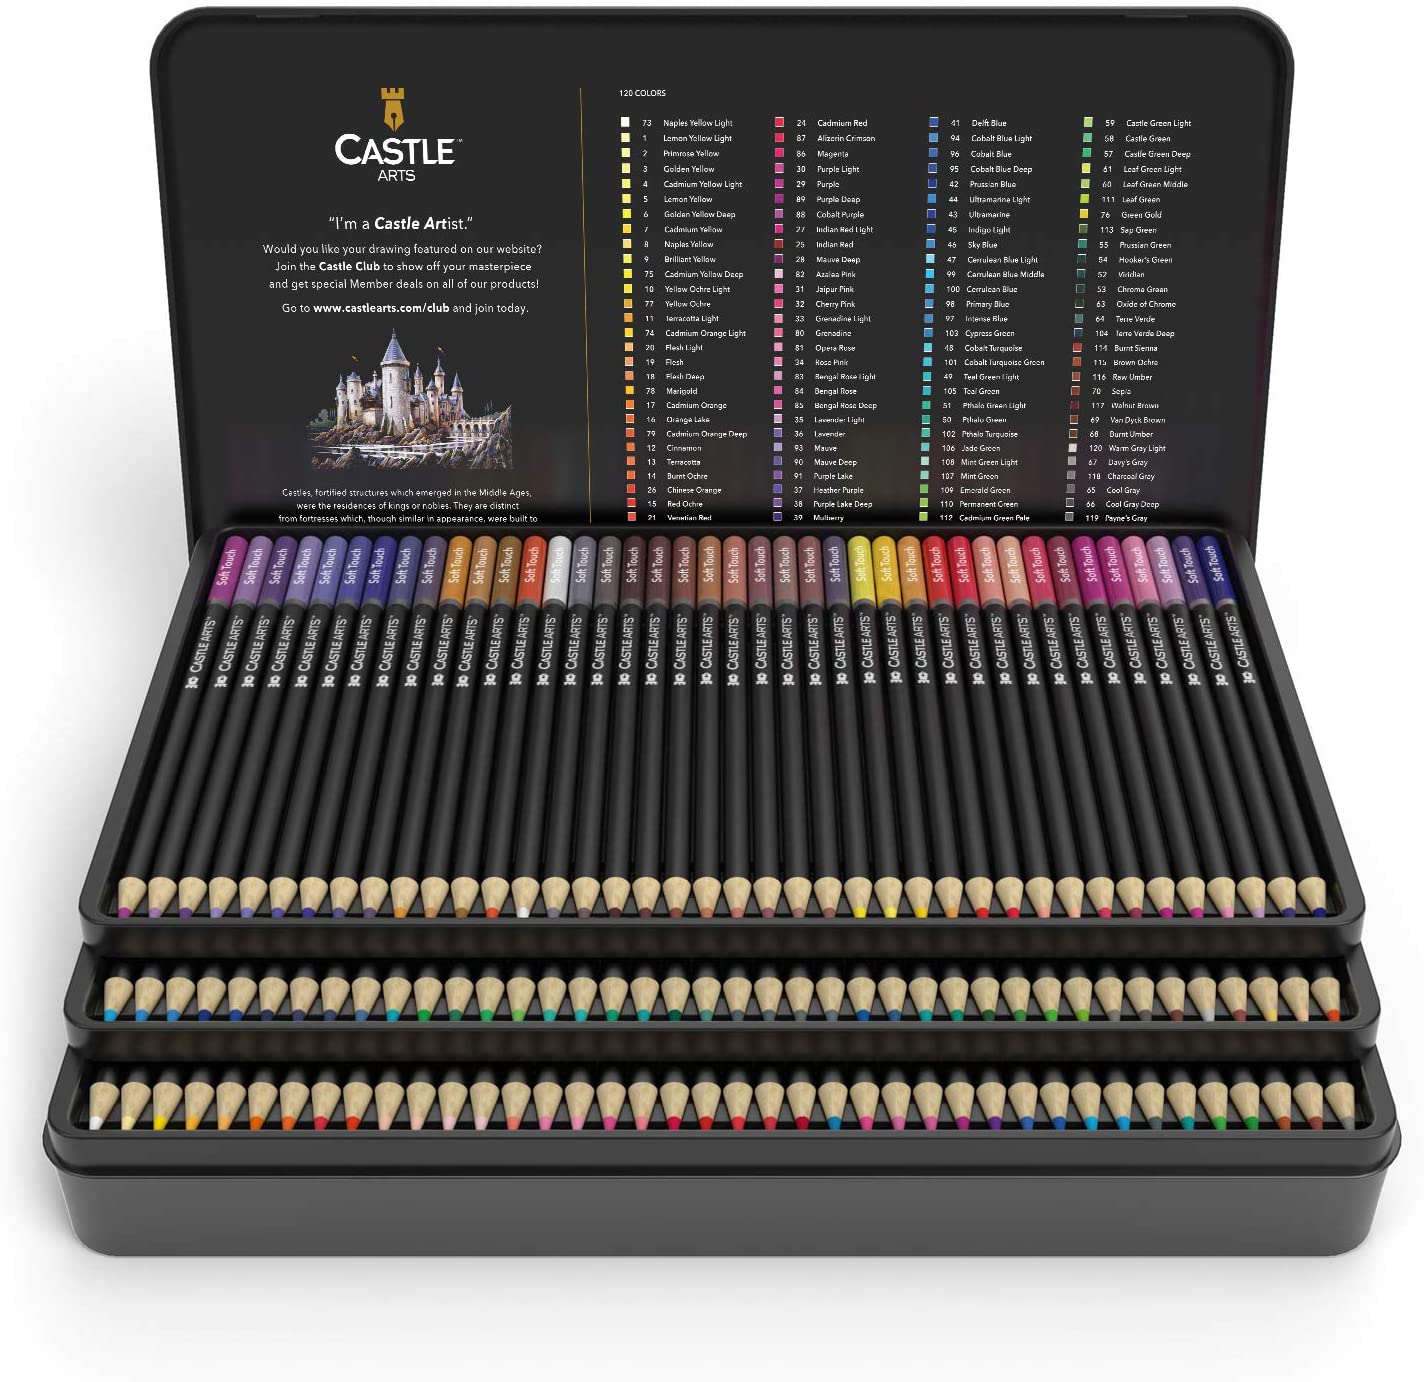 Castle Art Supplies 120 Colored Pencils Zipper-Case Set